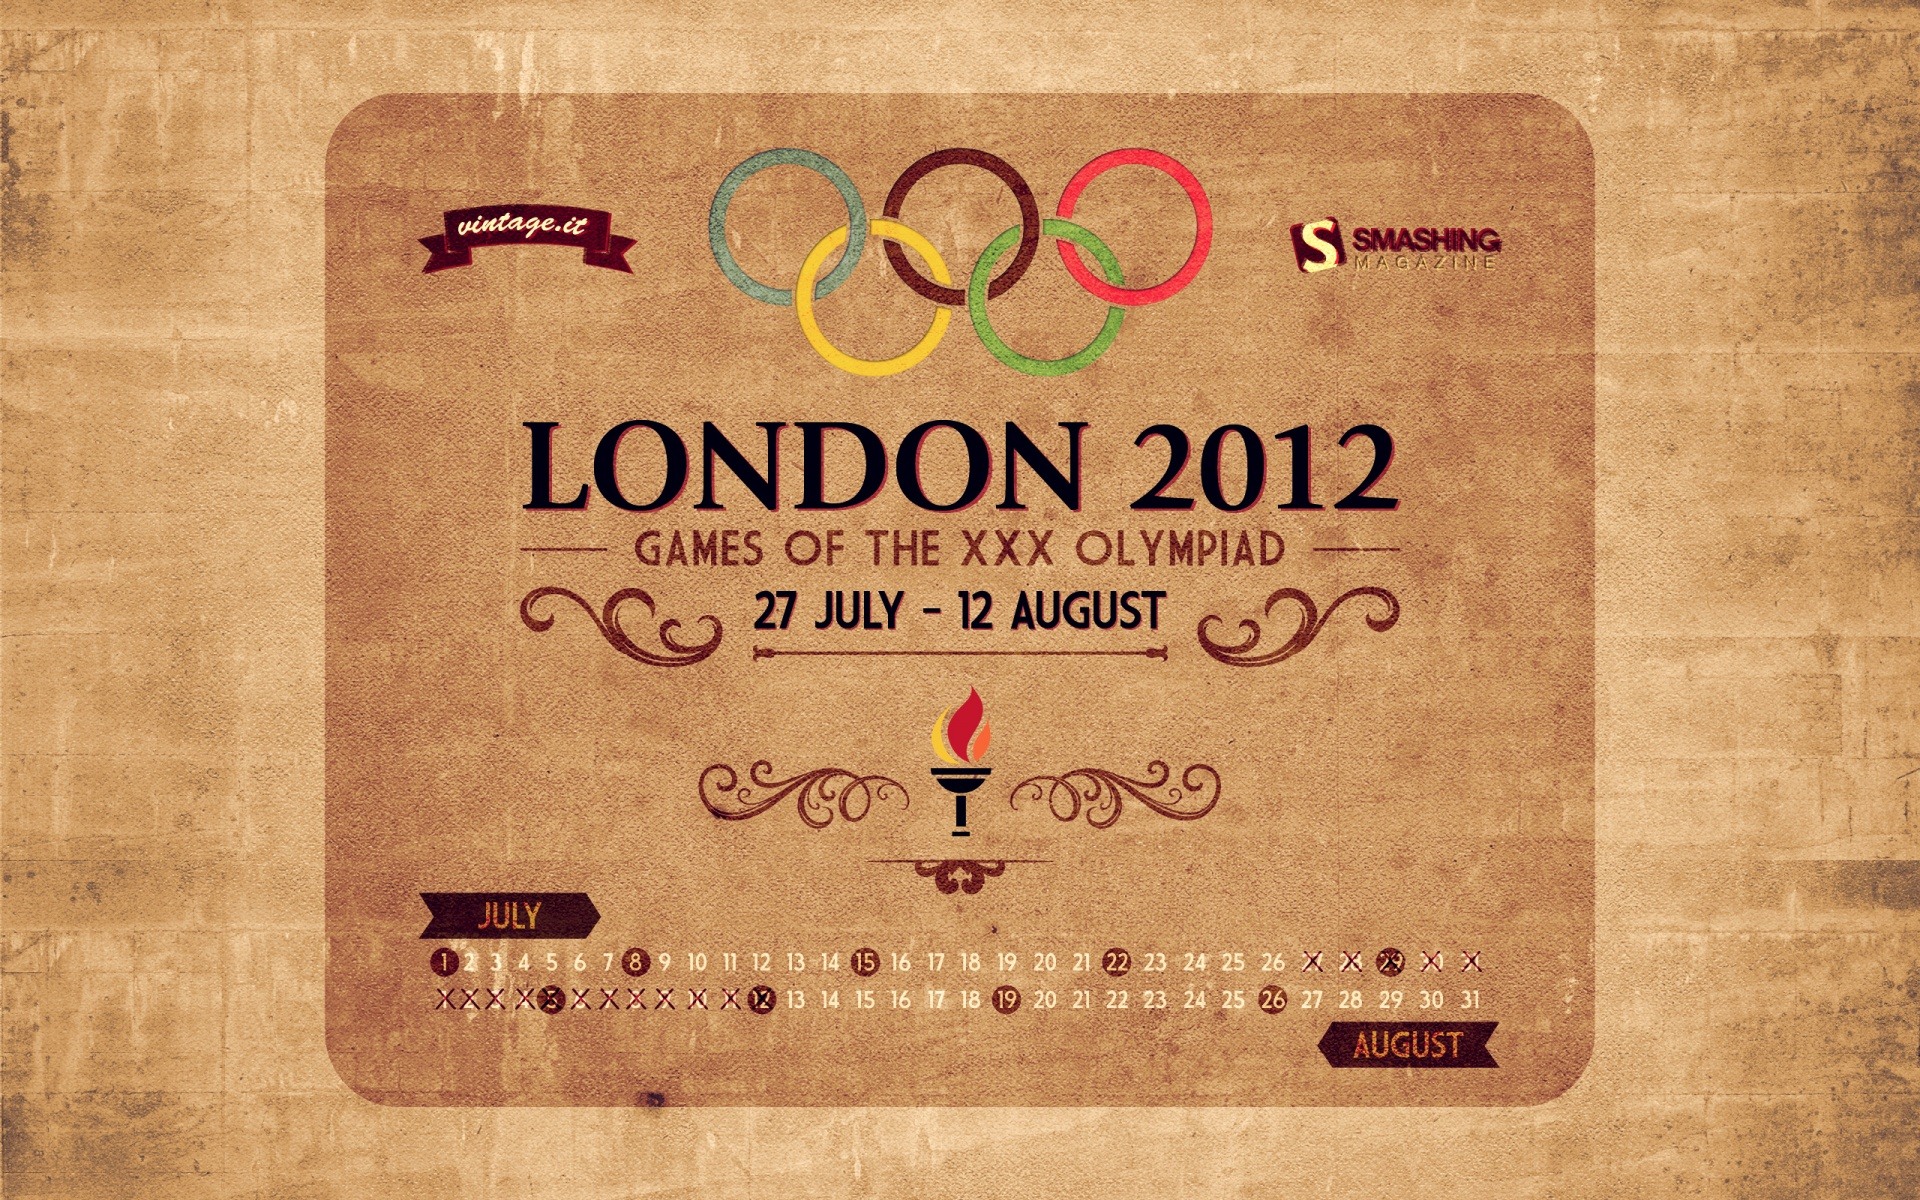 Londres 2012 Olimpiadas fondos temáticos (1) #24 - 1920x1200